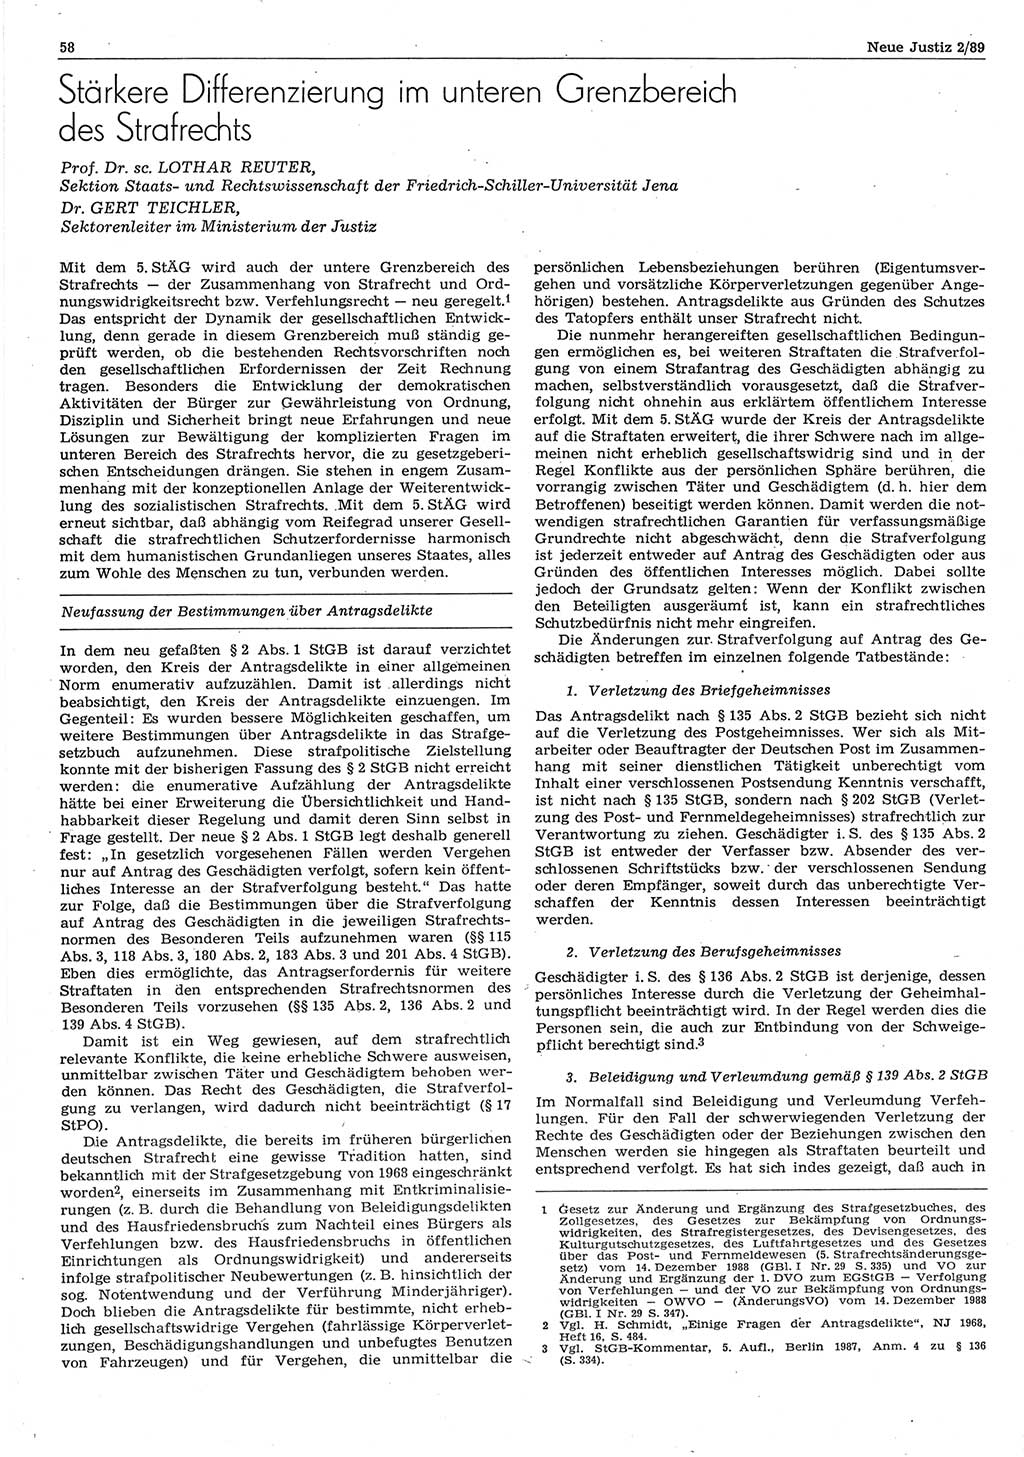 Neue Justiz (NJ), Zeitschrift für sozialistisches Recht und Gesetzlichkeit [Deutsche Demokratische Republik (DDR)], 43. Jahrgang 1989, Seite 58 (NJ DDR 1989, S. 58)